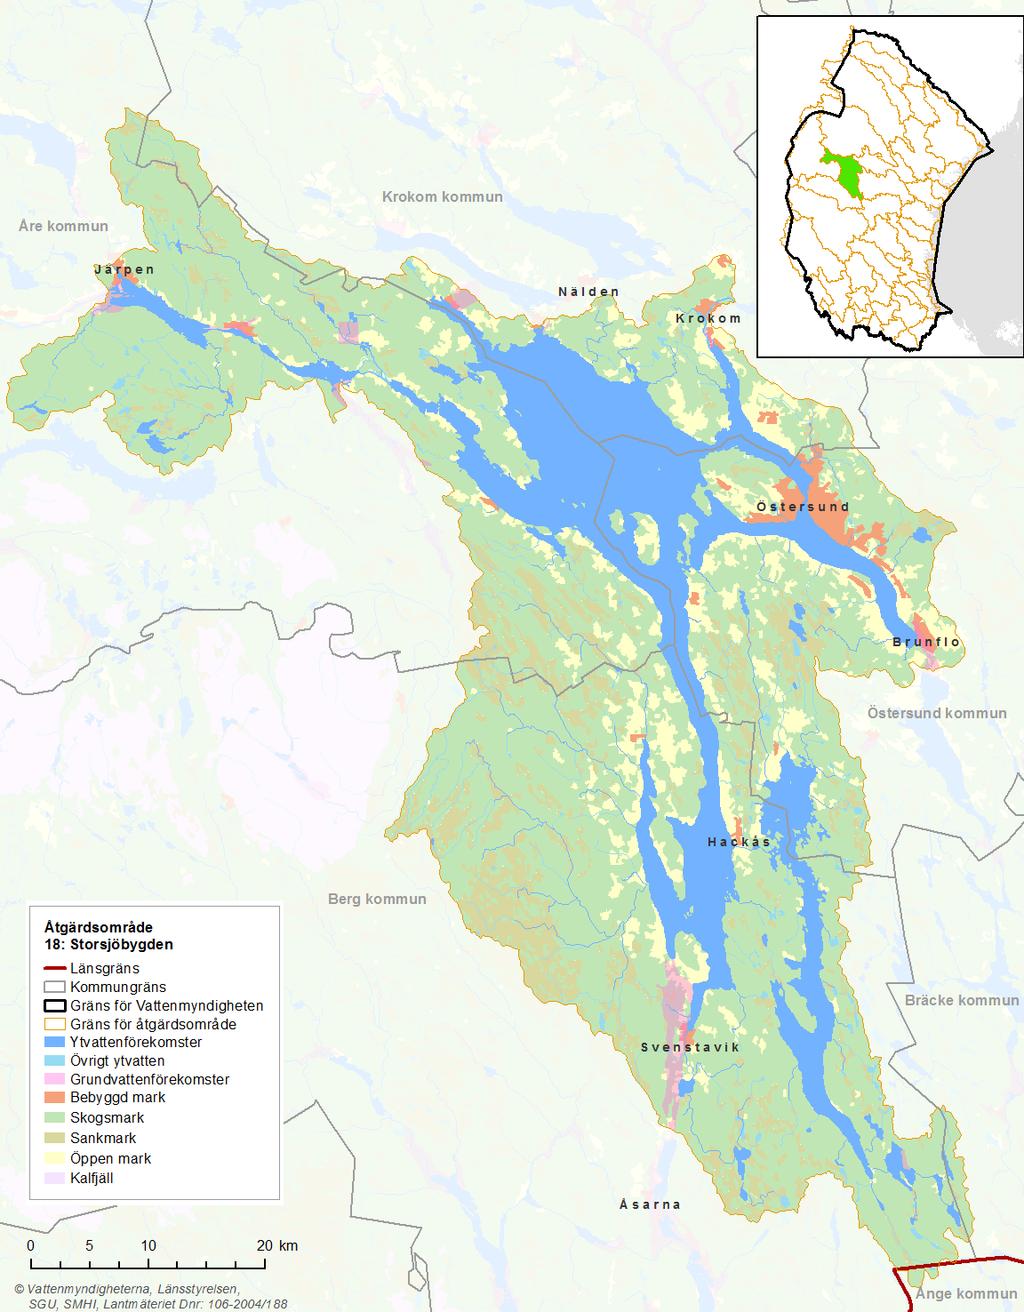 Bild 1: Kartan visar Storsjöbygdens markanvändning